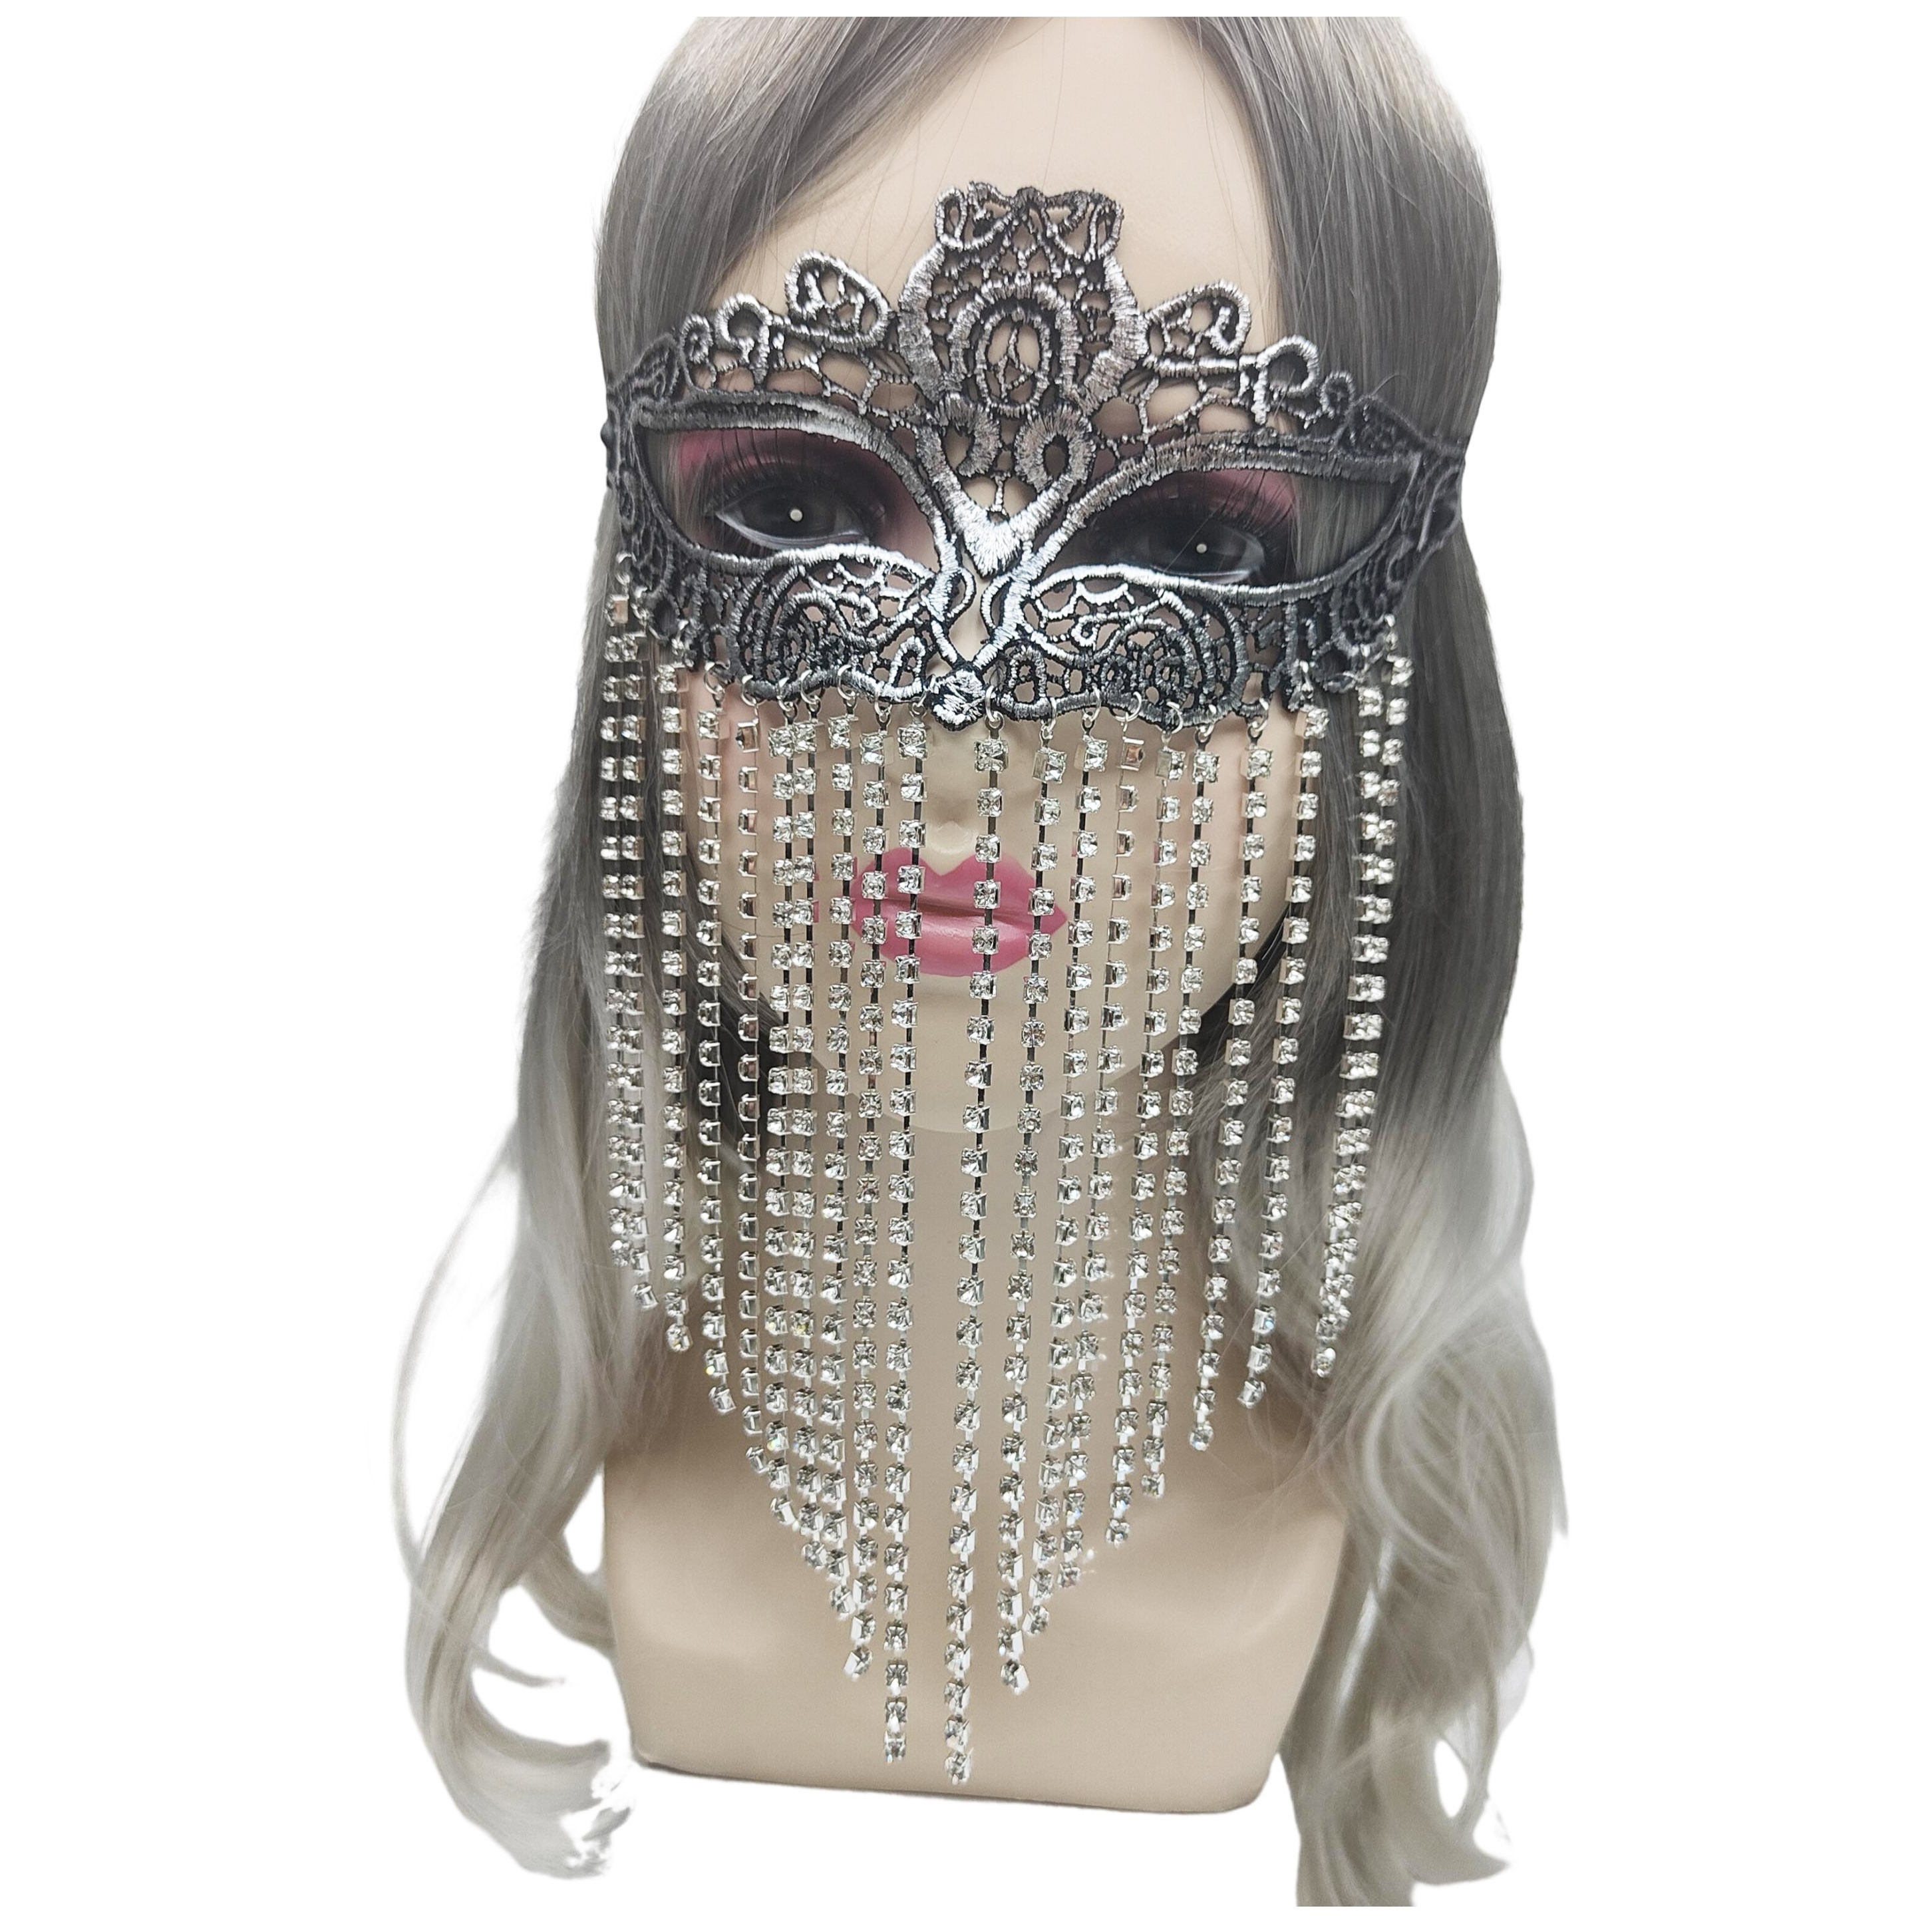 Encaje de mujer Baile de máscaras veneciana Máscara de encaje Sexy